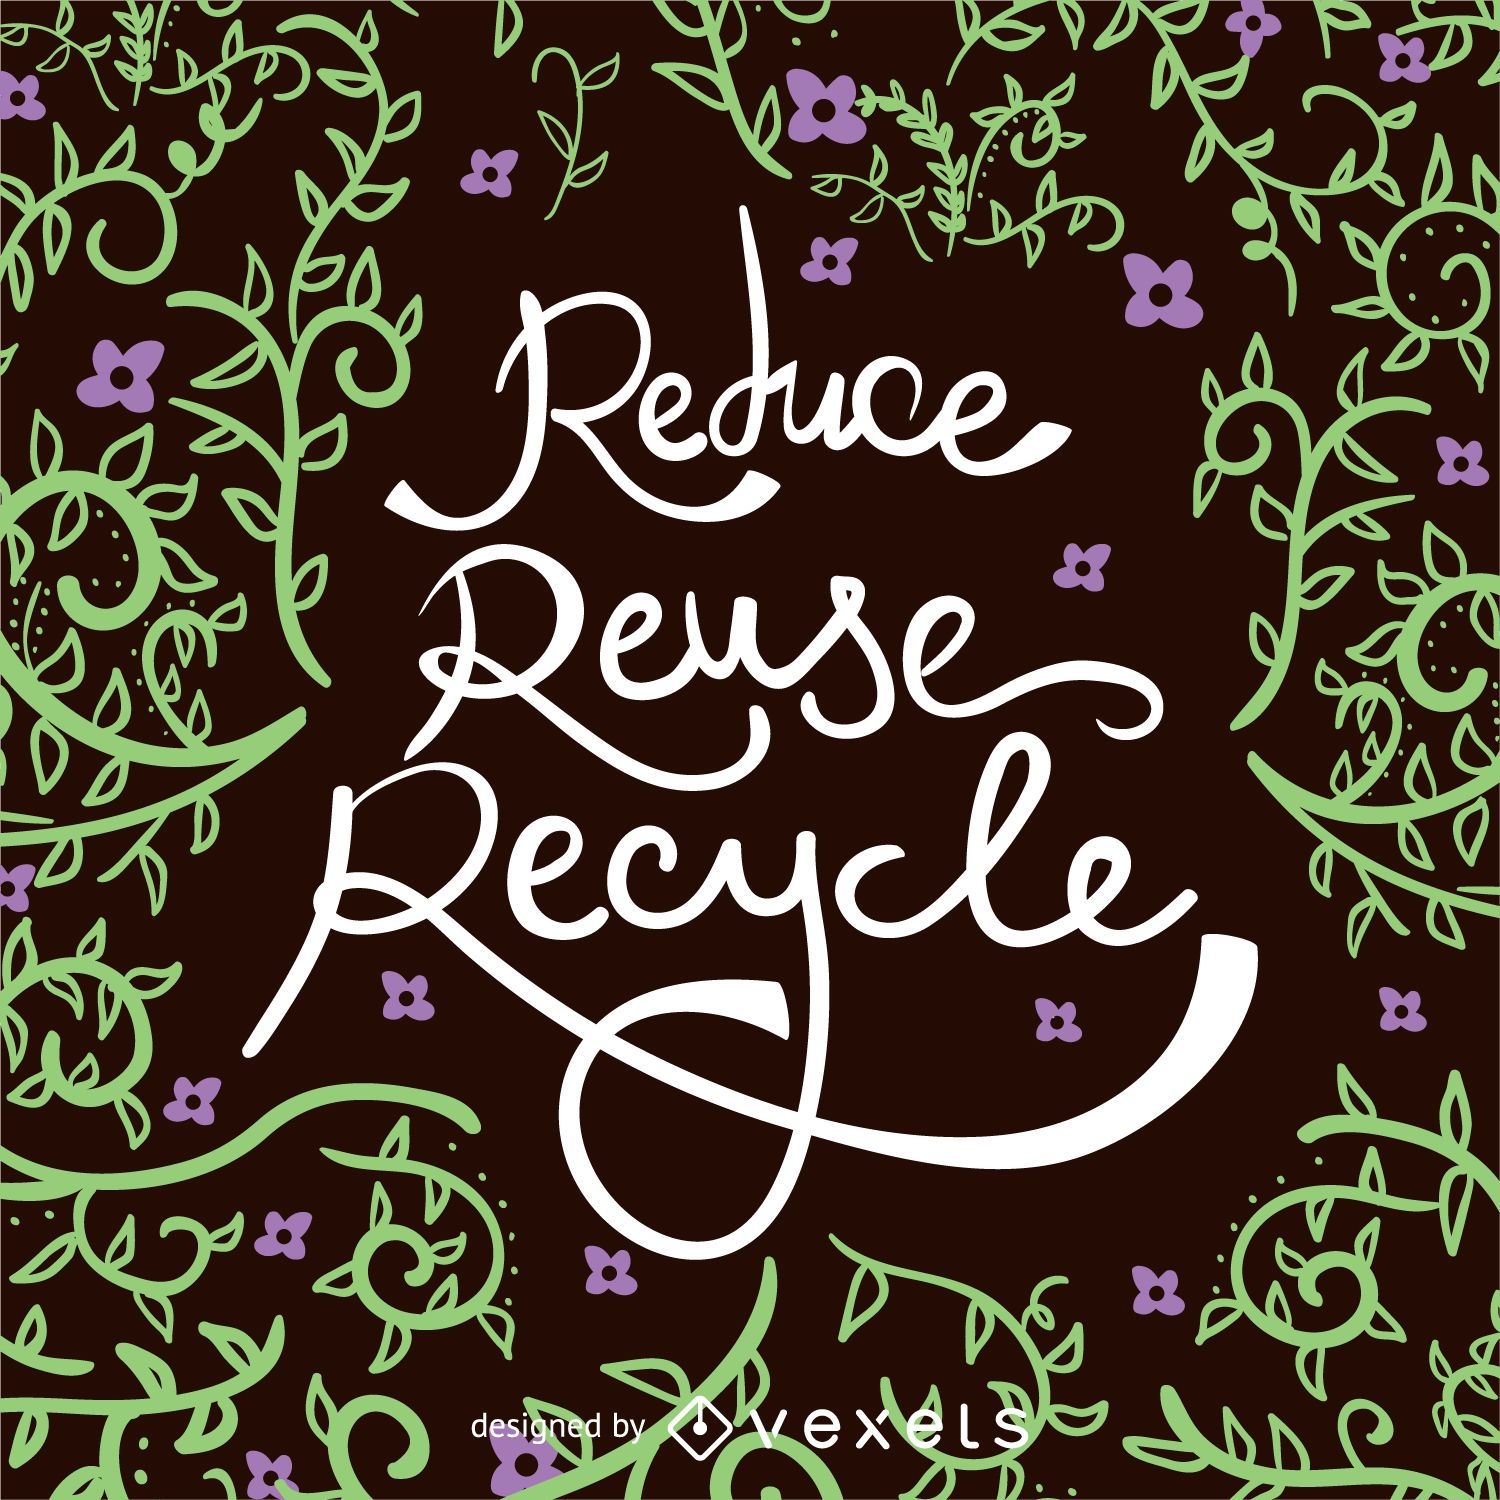 Reducir Reutilizar Reciclar D?a de la Tierra